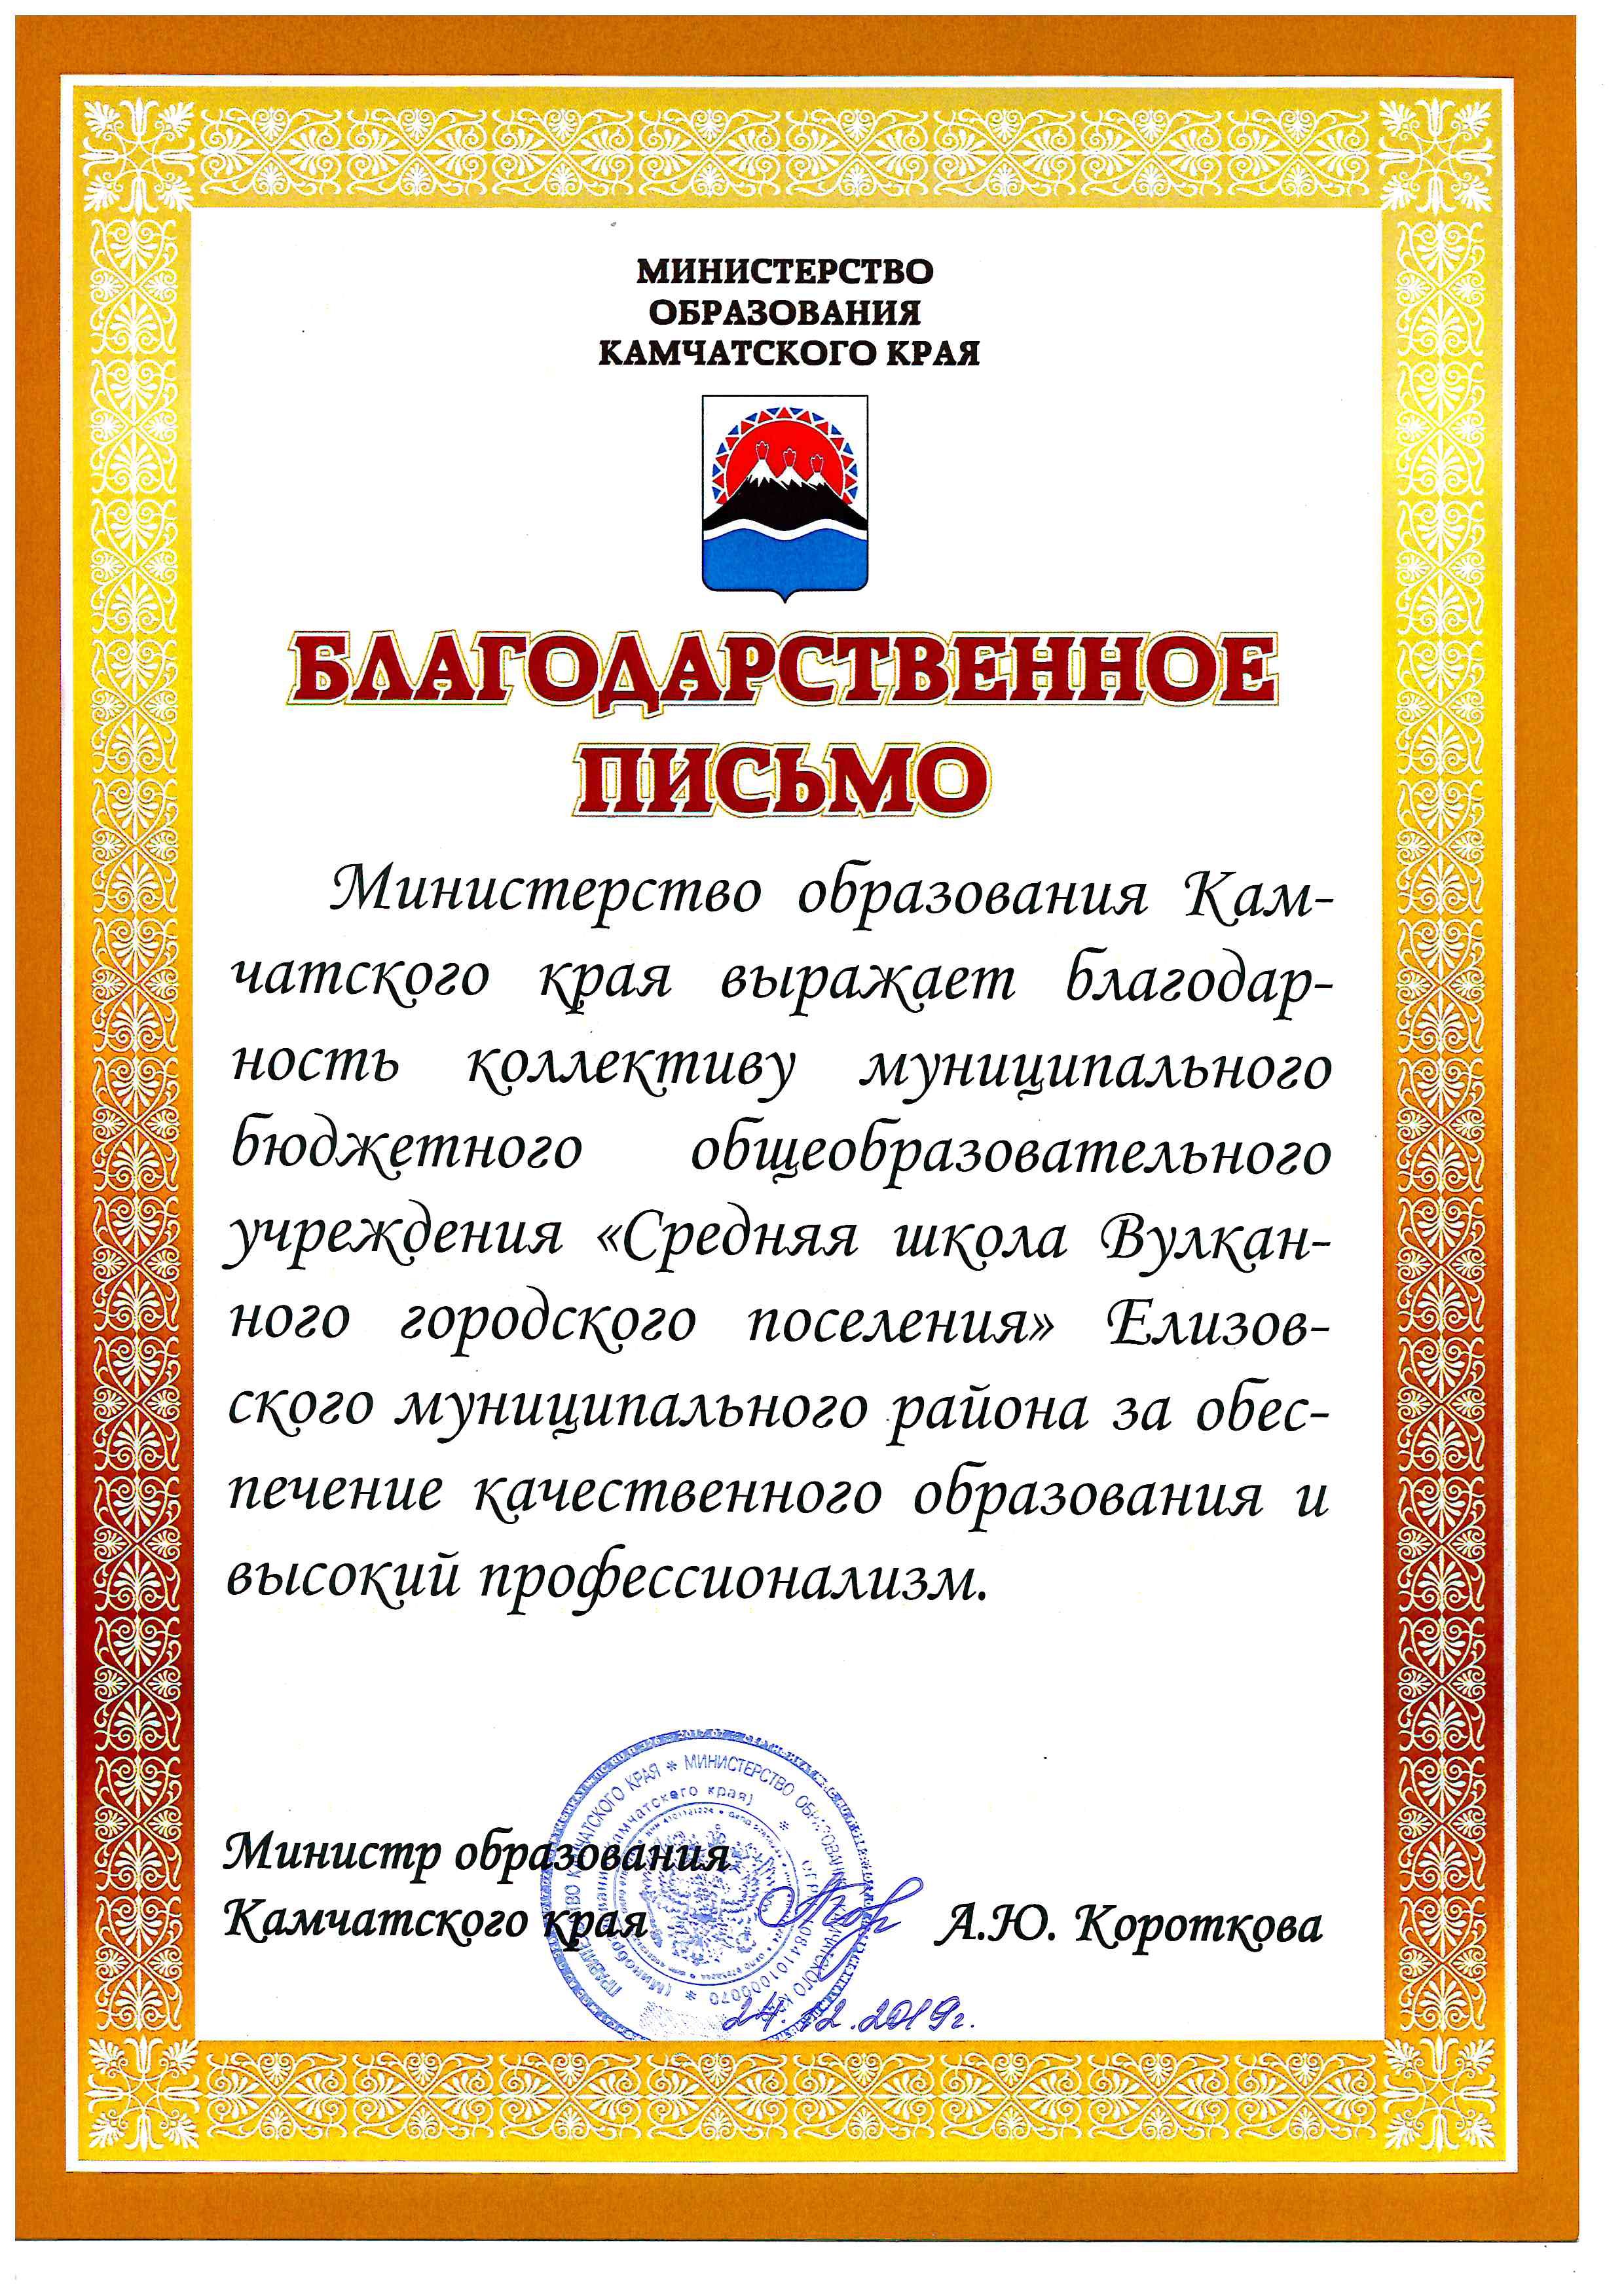 Благодарственное письмо Министерства образования Камчатского края